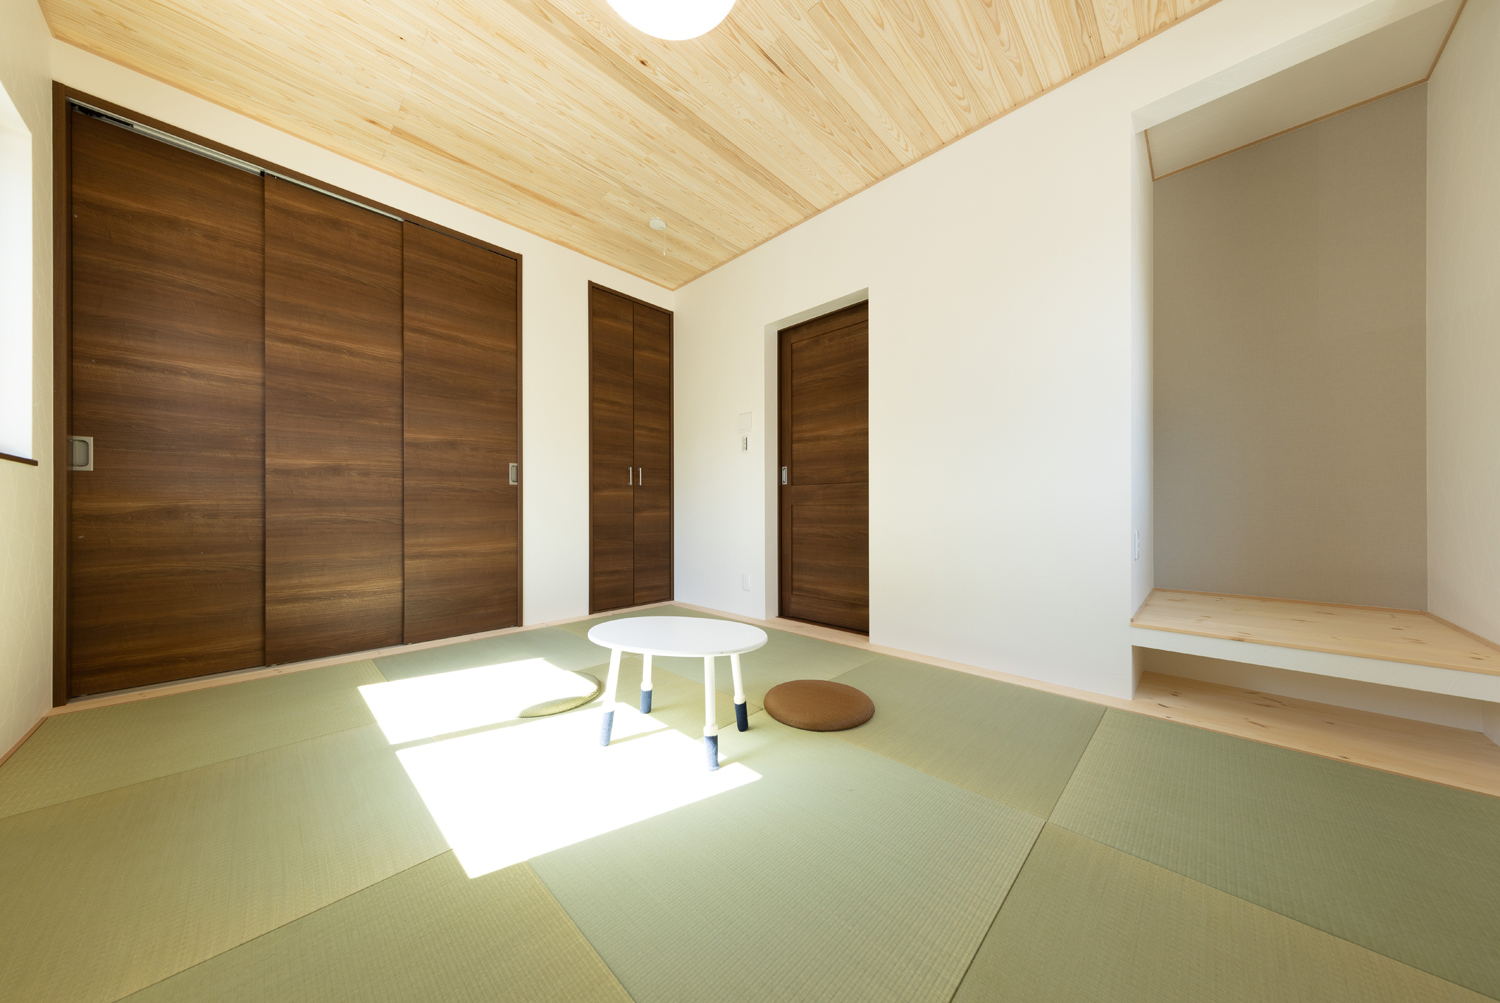 和歌山市 新築 一戸建て 木の家 和室